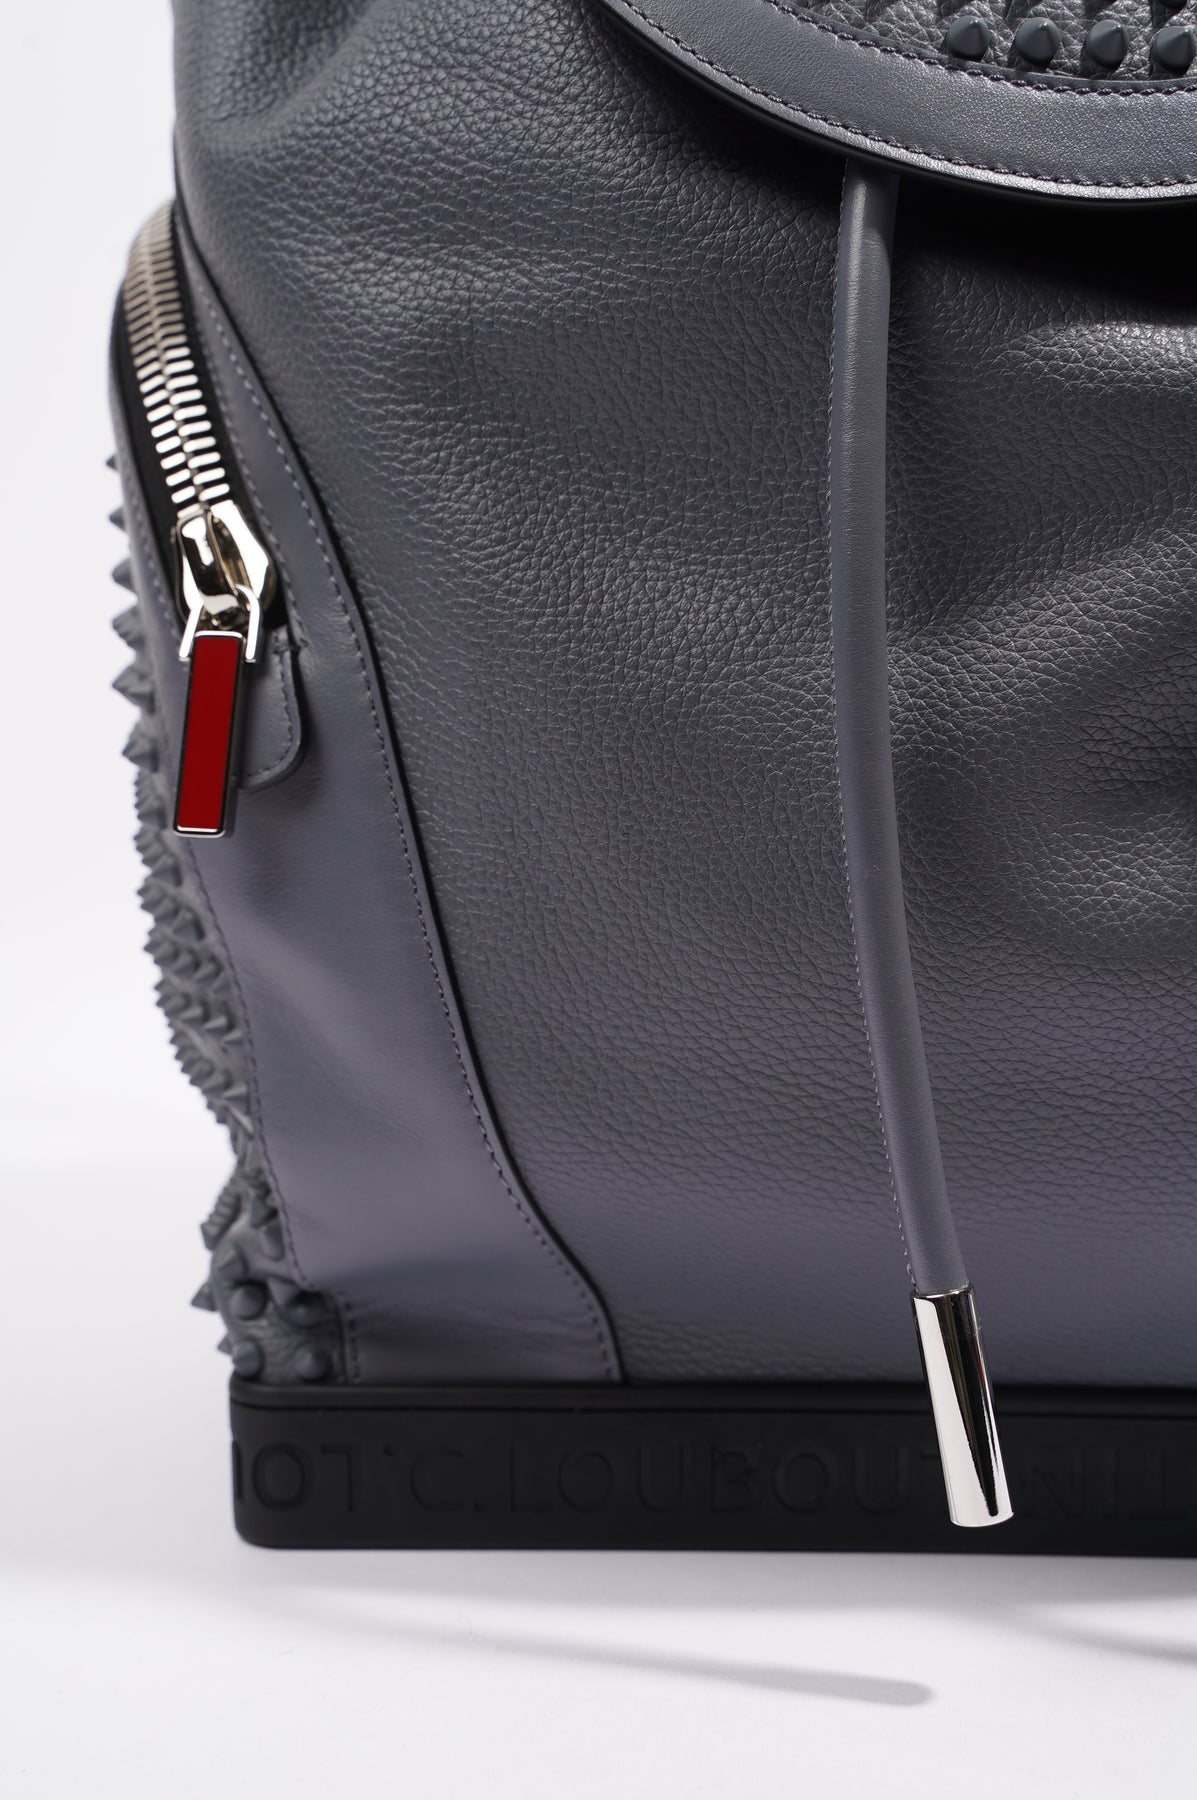 Louis Vuitton presenta backpack trunk, la reinvención del baúl